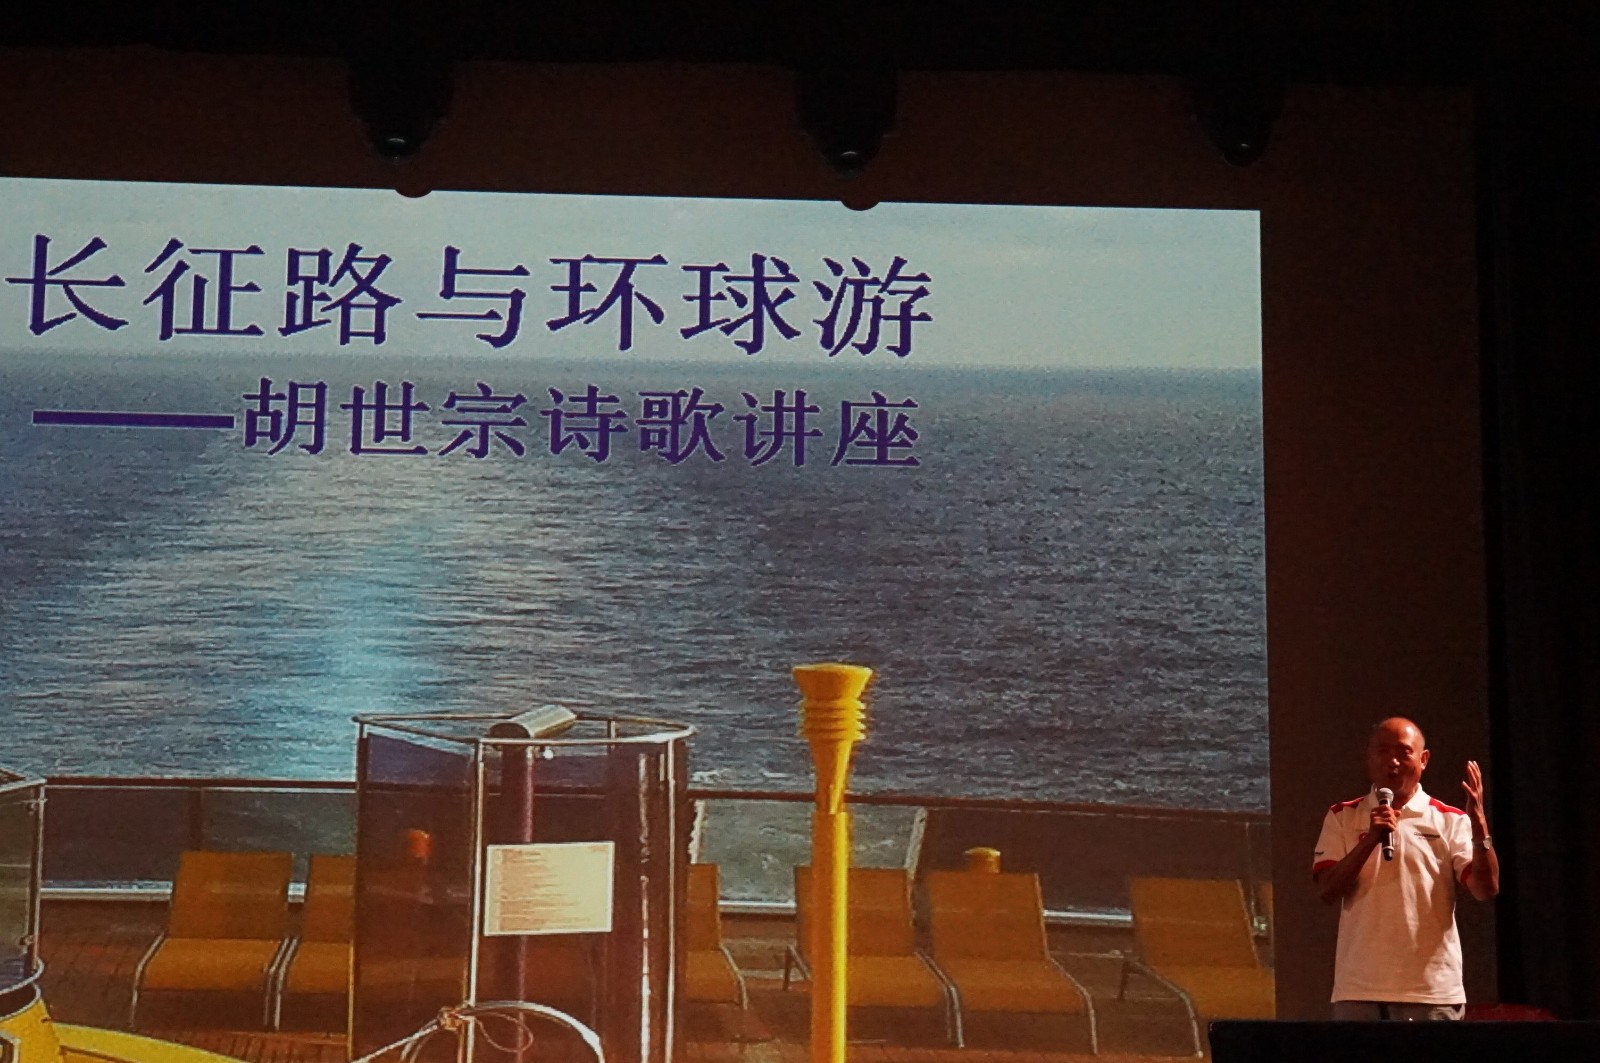 军旅诗人胡世宗在环球邮轮上举办诗歌讲座.JPG